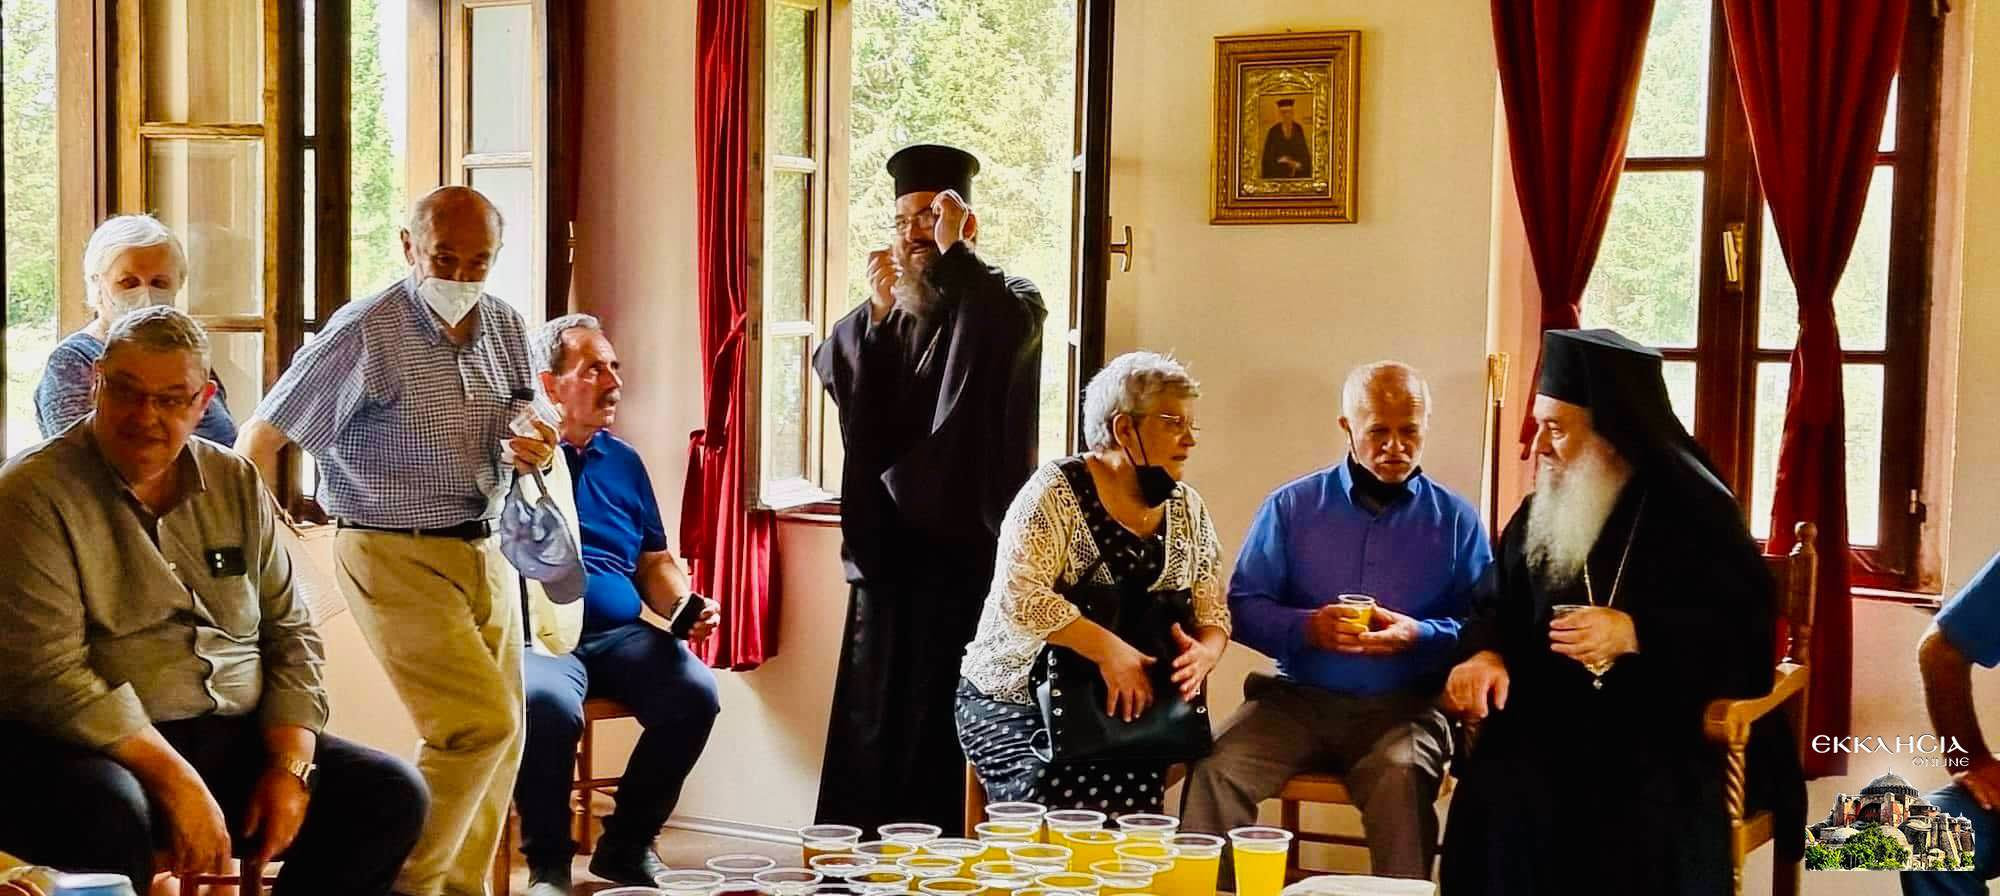 Προσκυνητές από την Ήπειρο στο Μοναστήρι του Αγίου Κοσμά